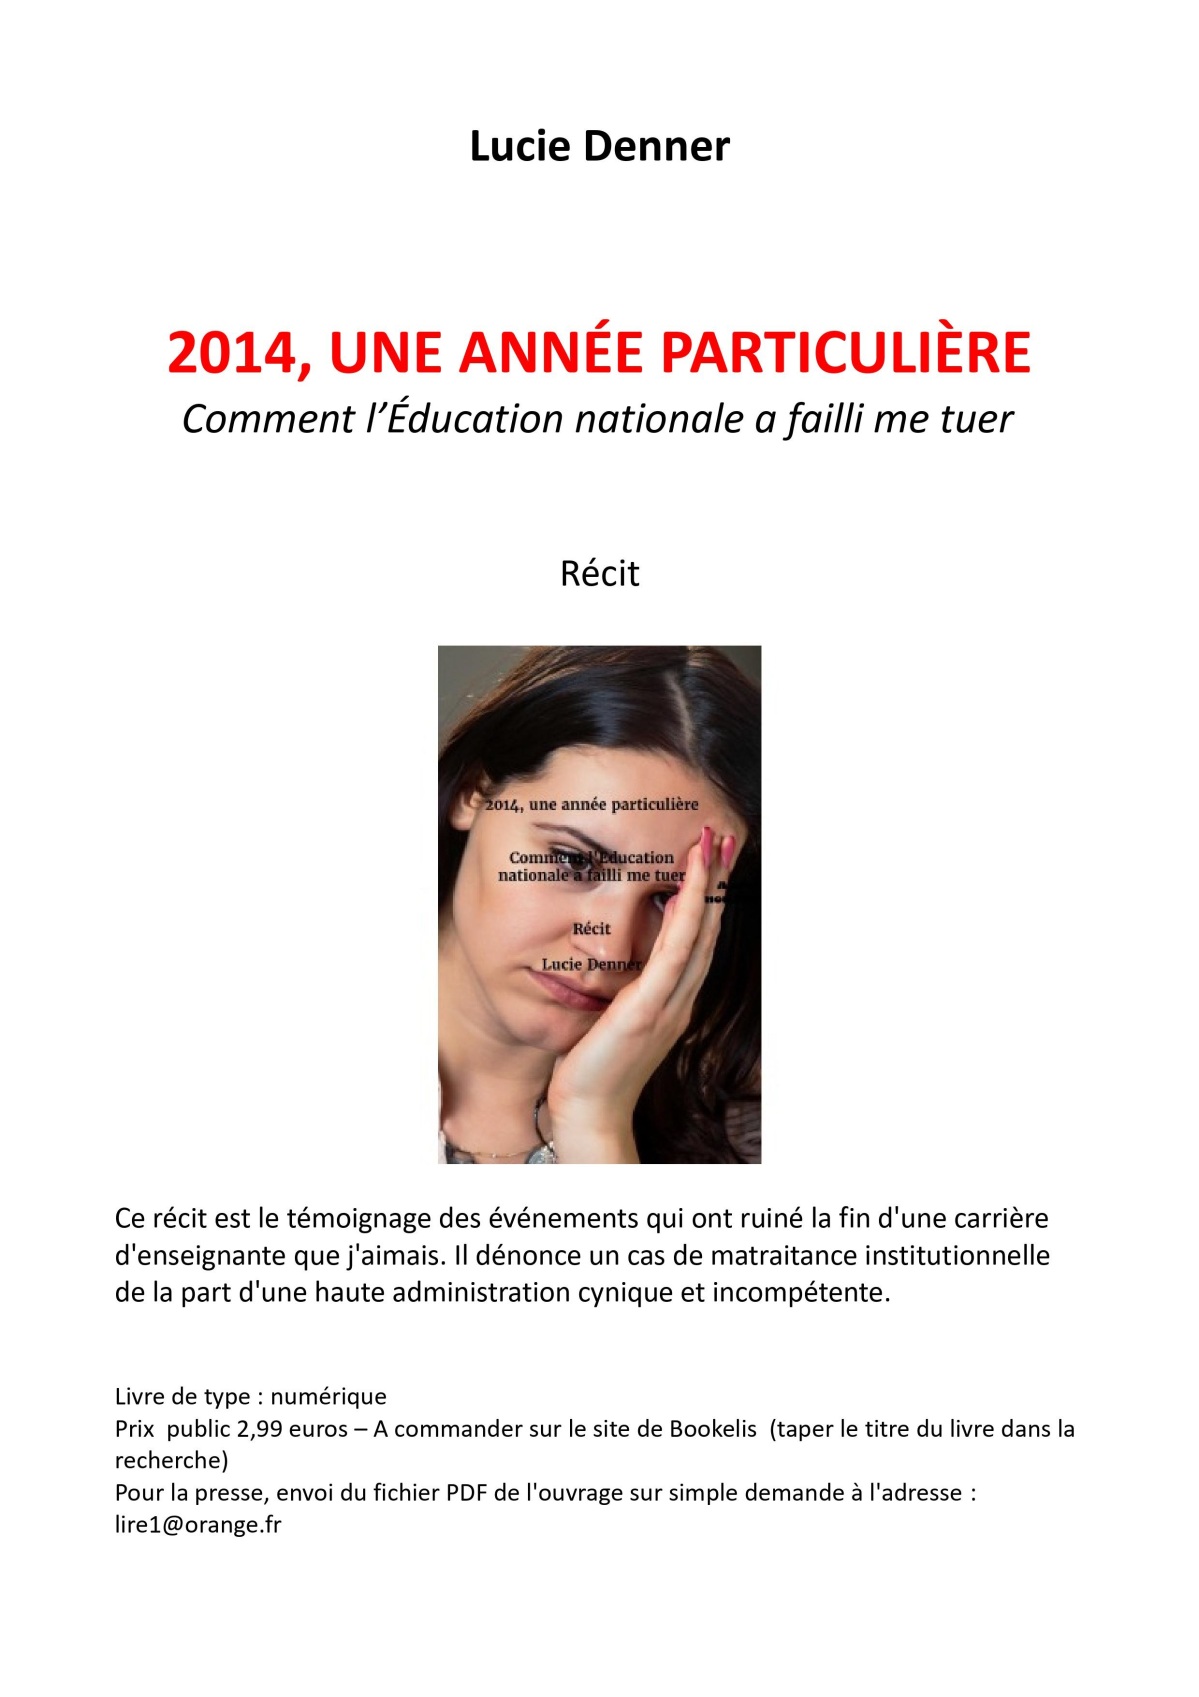 2014 Une année particulière de Lucie Denner ou comment l'Education nationale a failli me tuer (1)